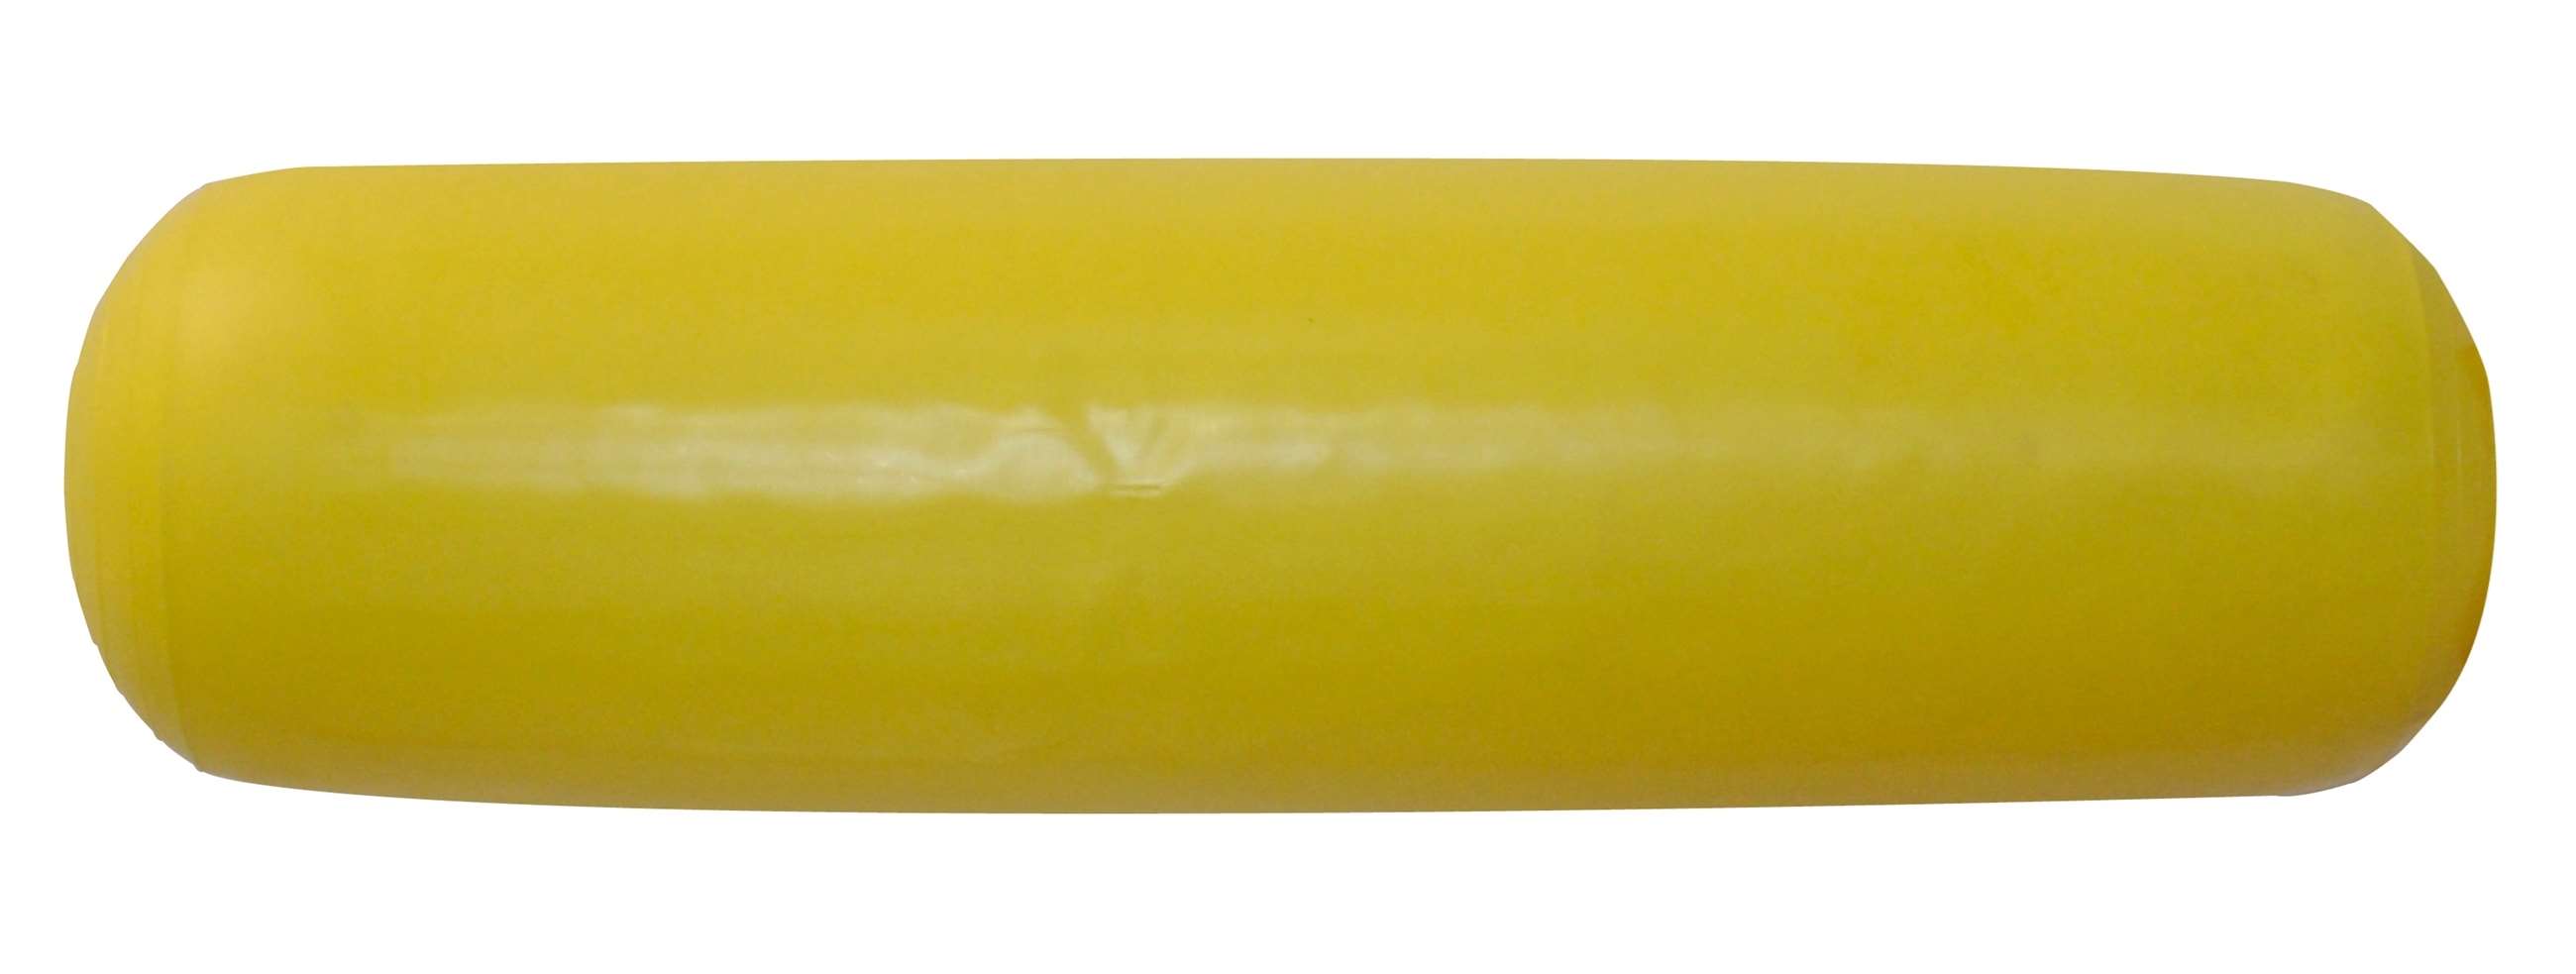 95cm float, yellow